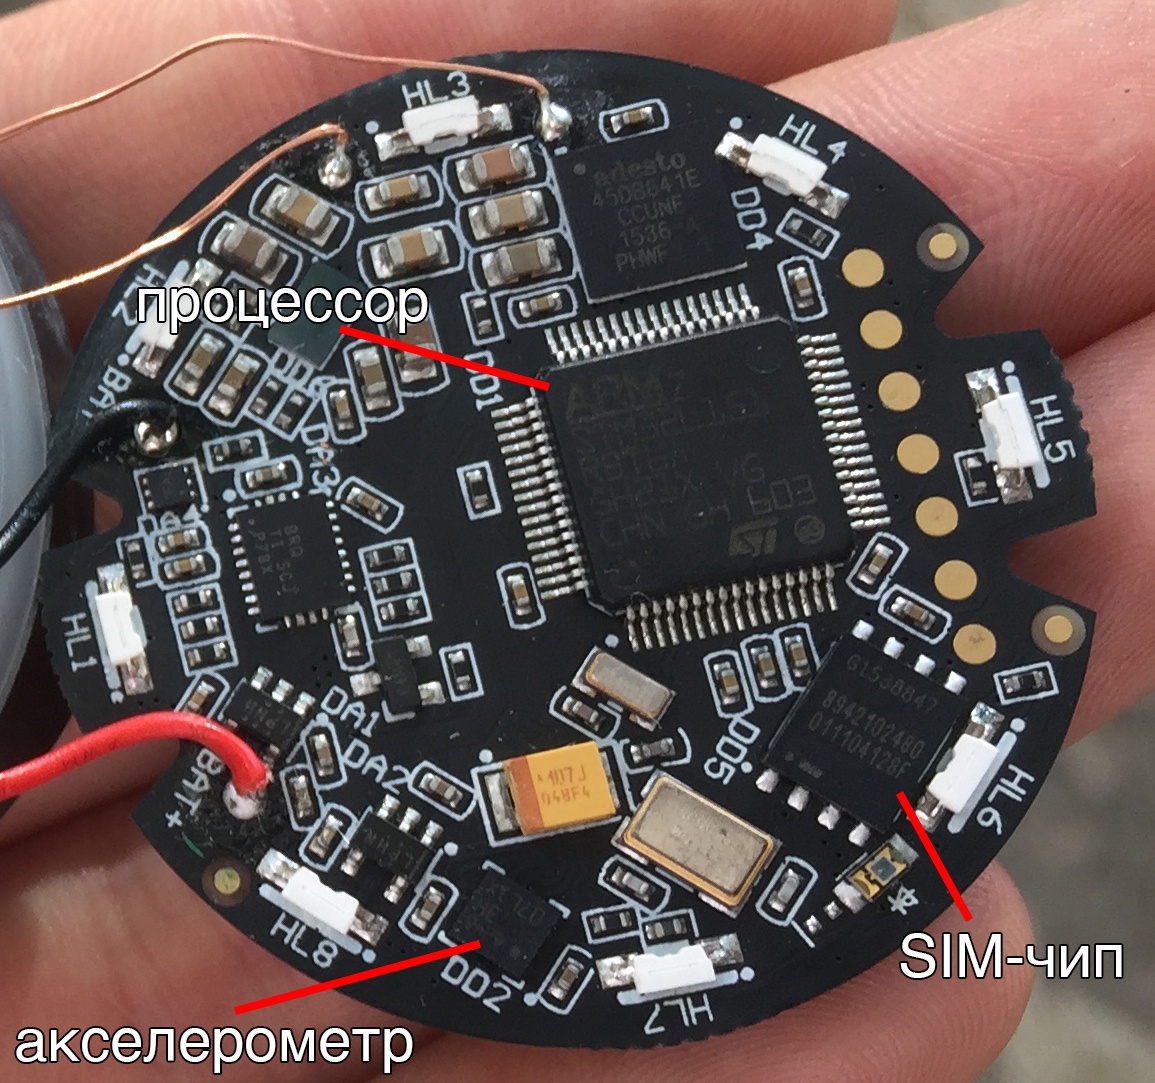 Кастомная GPS-антенна, SIM-чип, процессор и 8Мб памяти: из чего сделан умный собачий ошейник Mishiko - 7